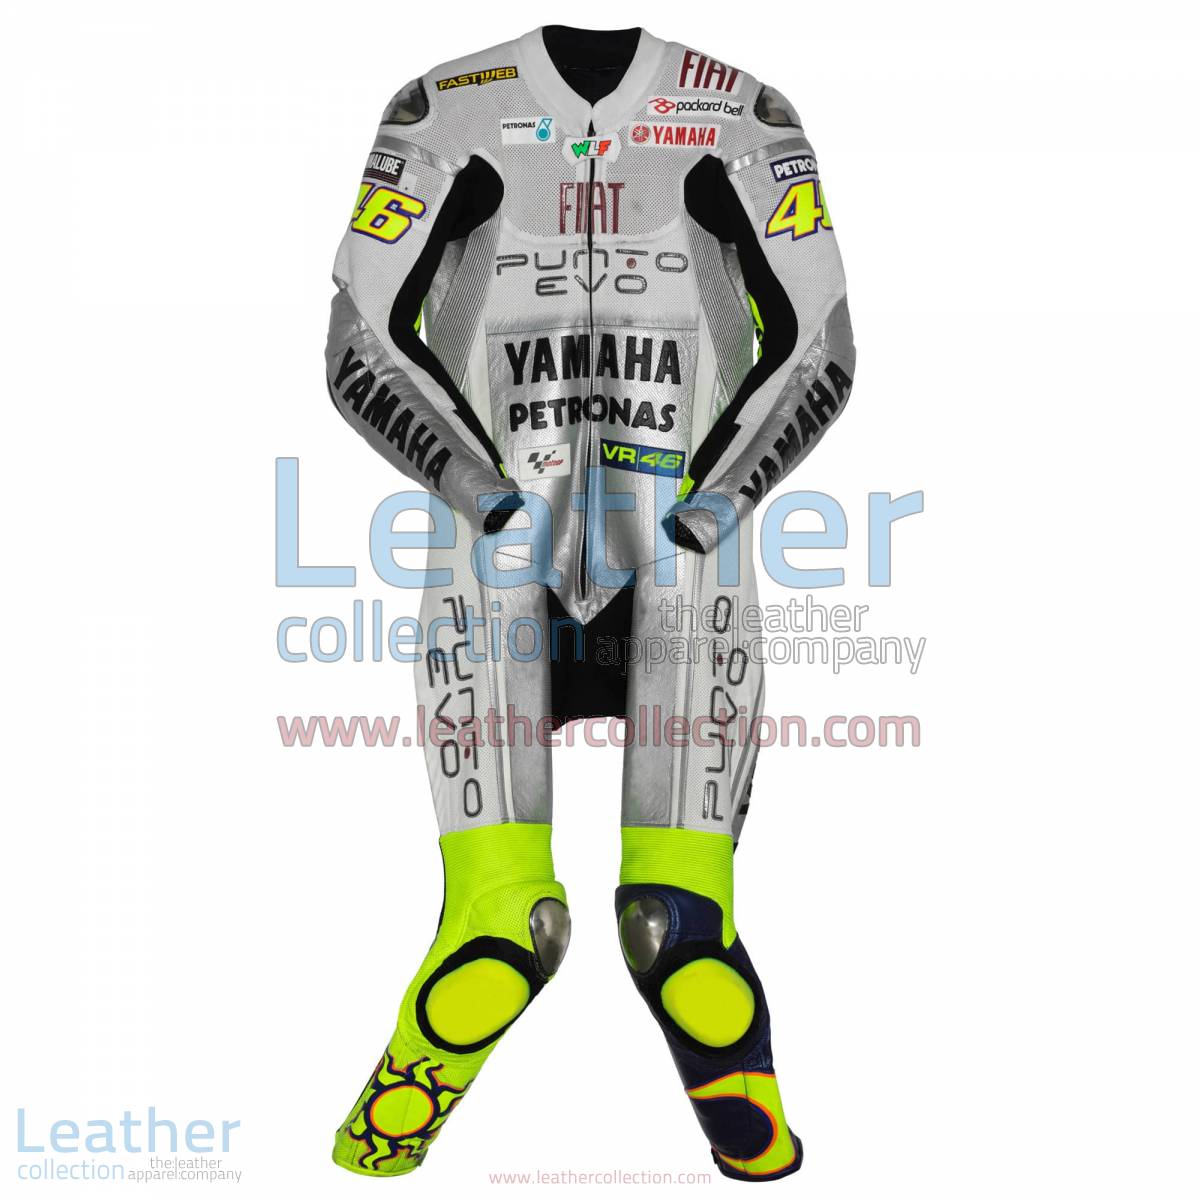 Valentino Rossi Yamaha Fiat 2009 Racing Suit | yamaha apparel,racing suit